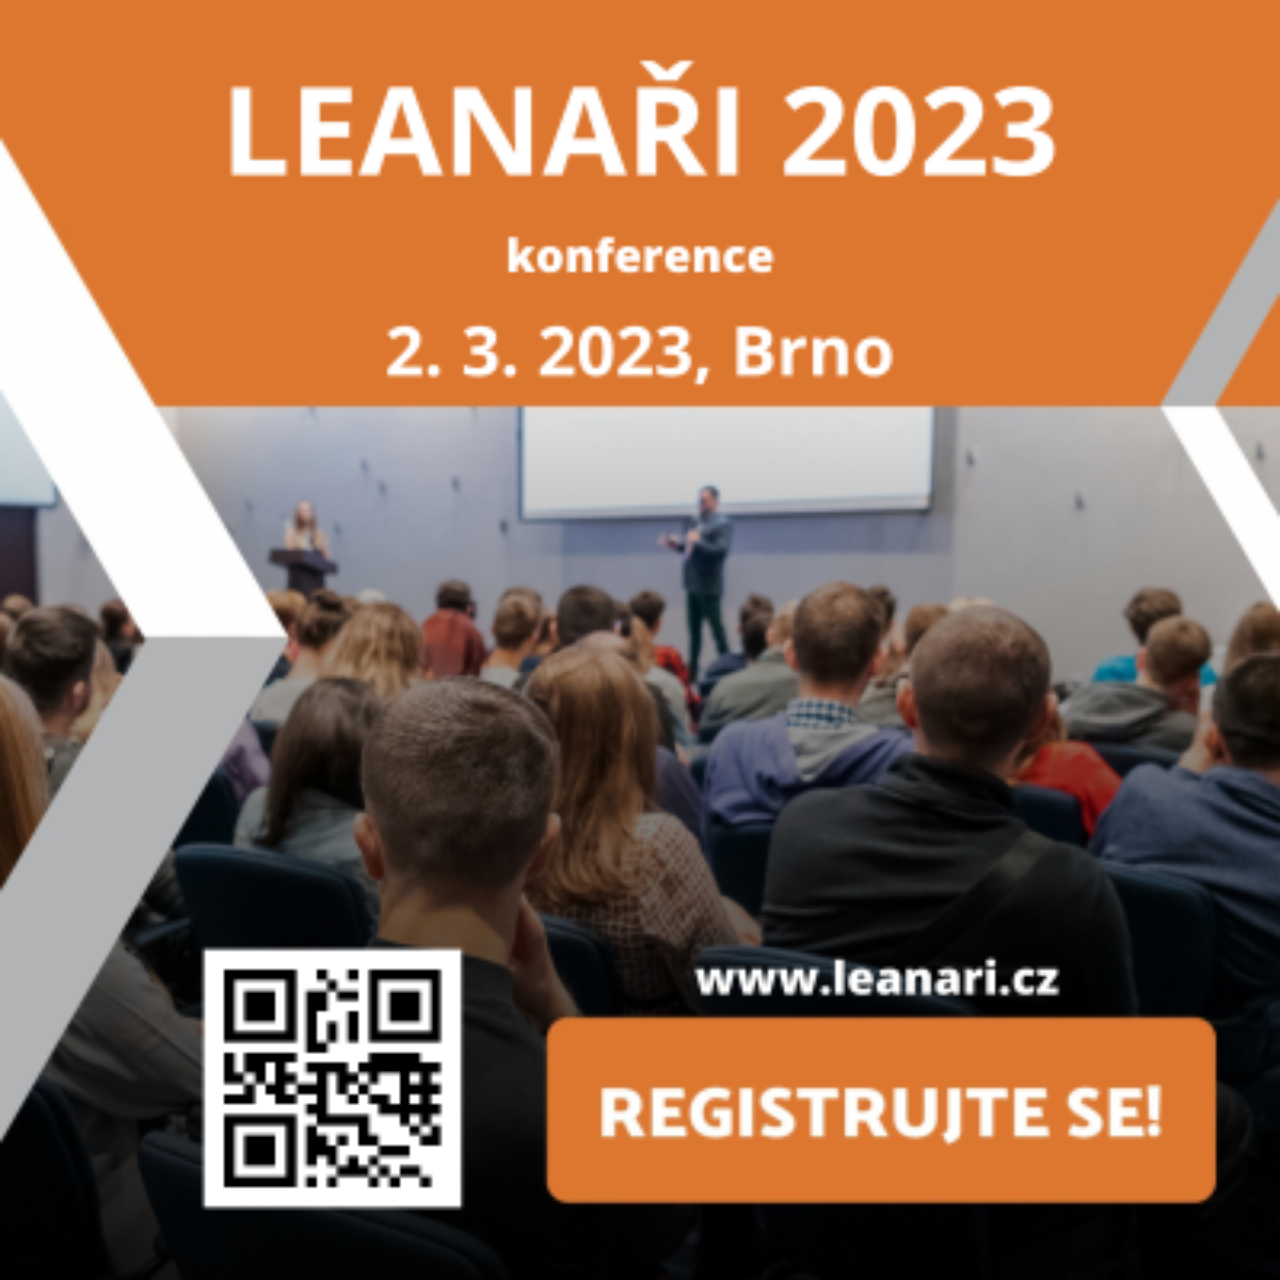 LEANA Ri 2023 Vizual konference 400x400